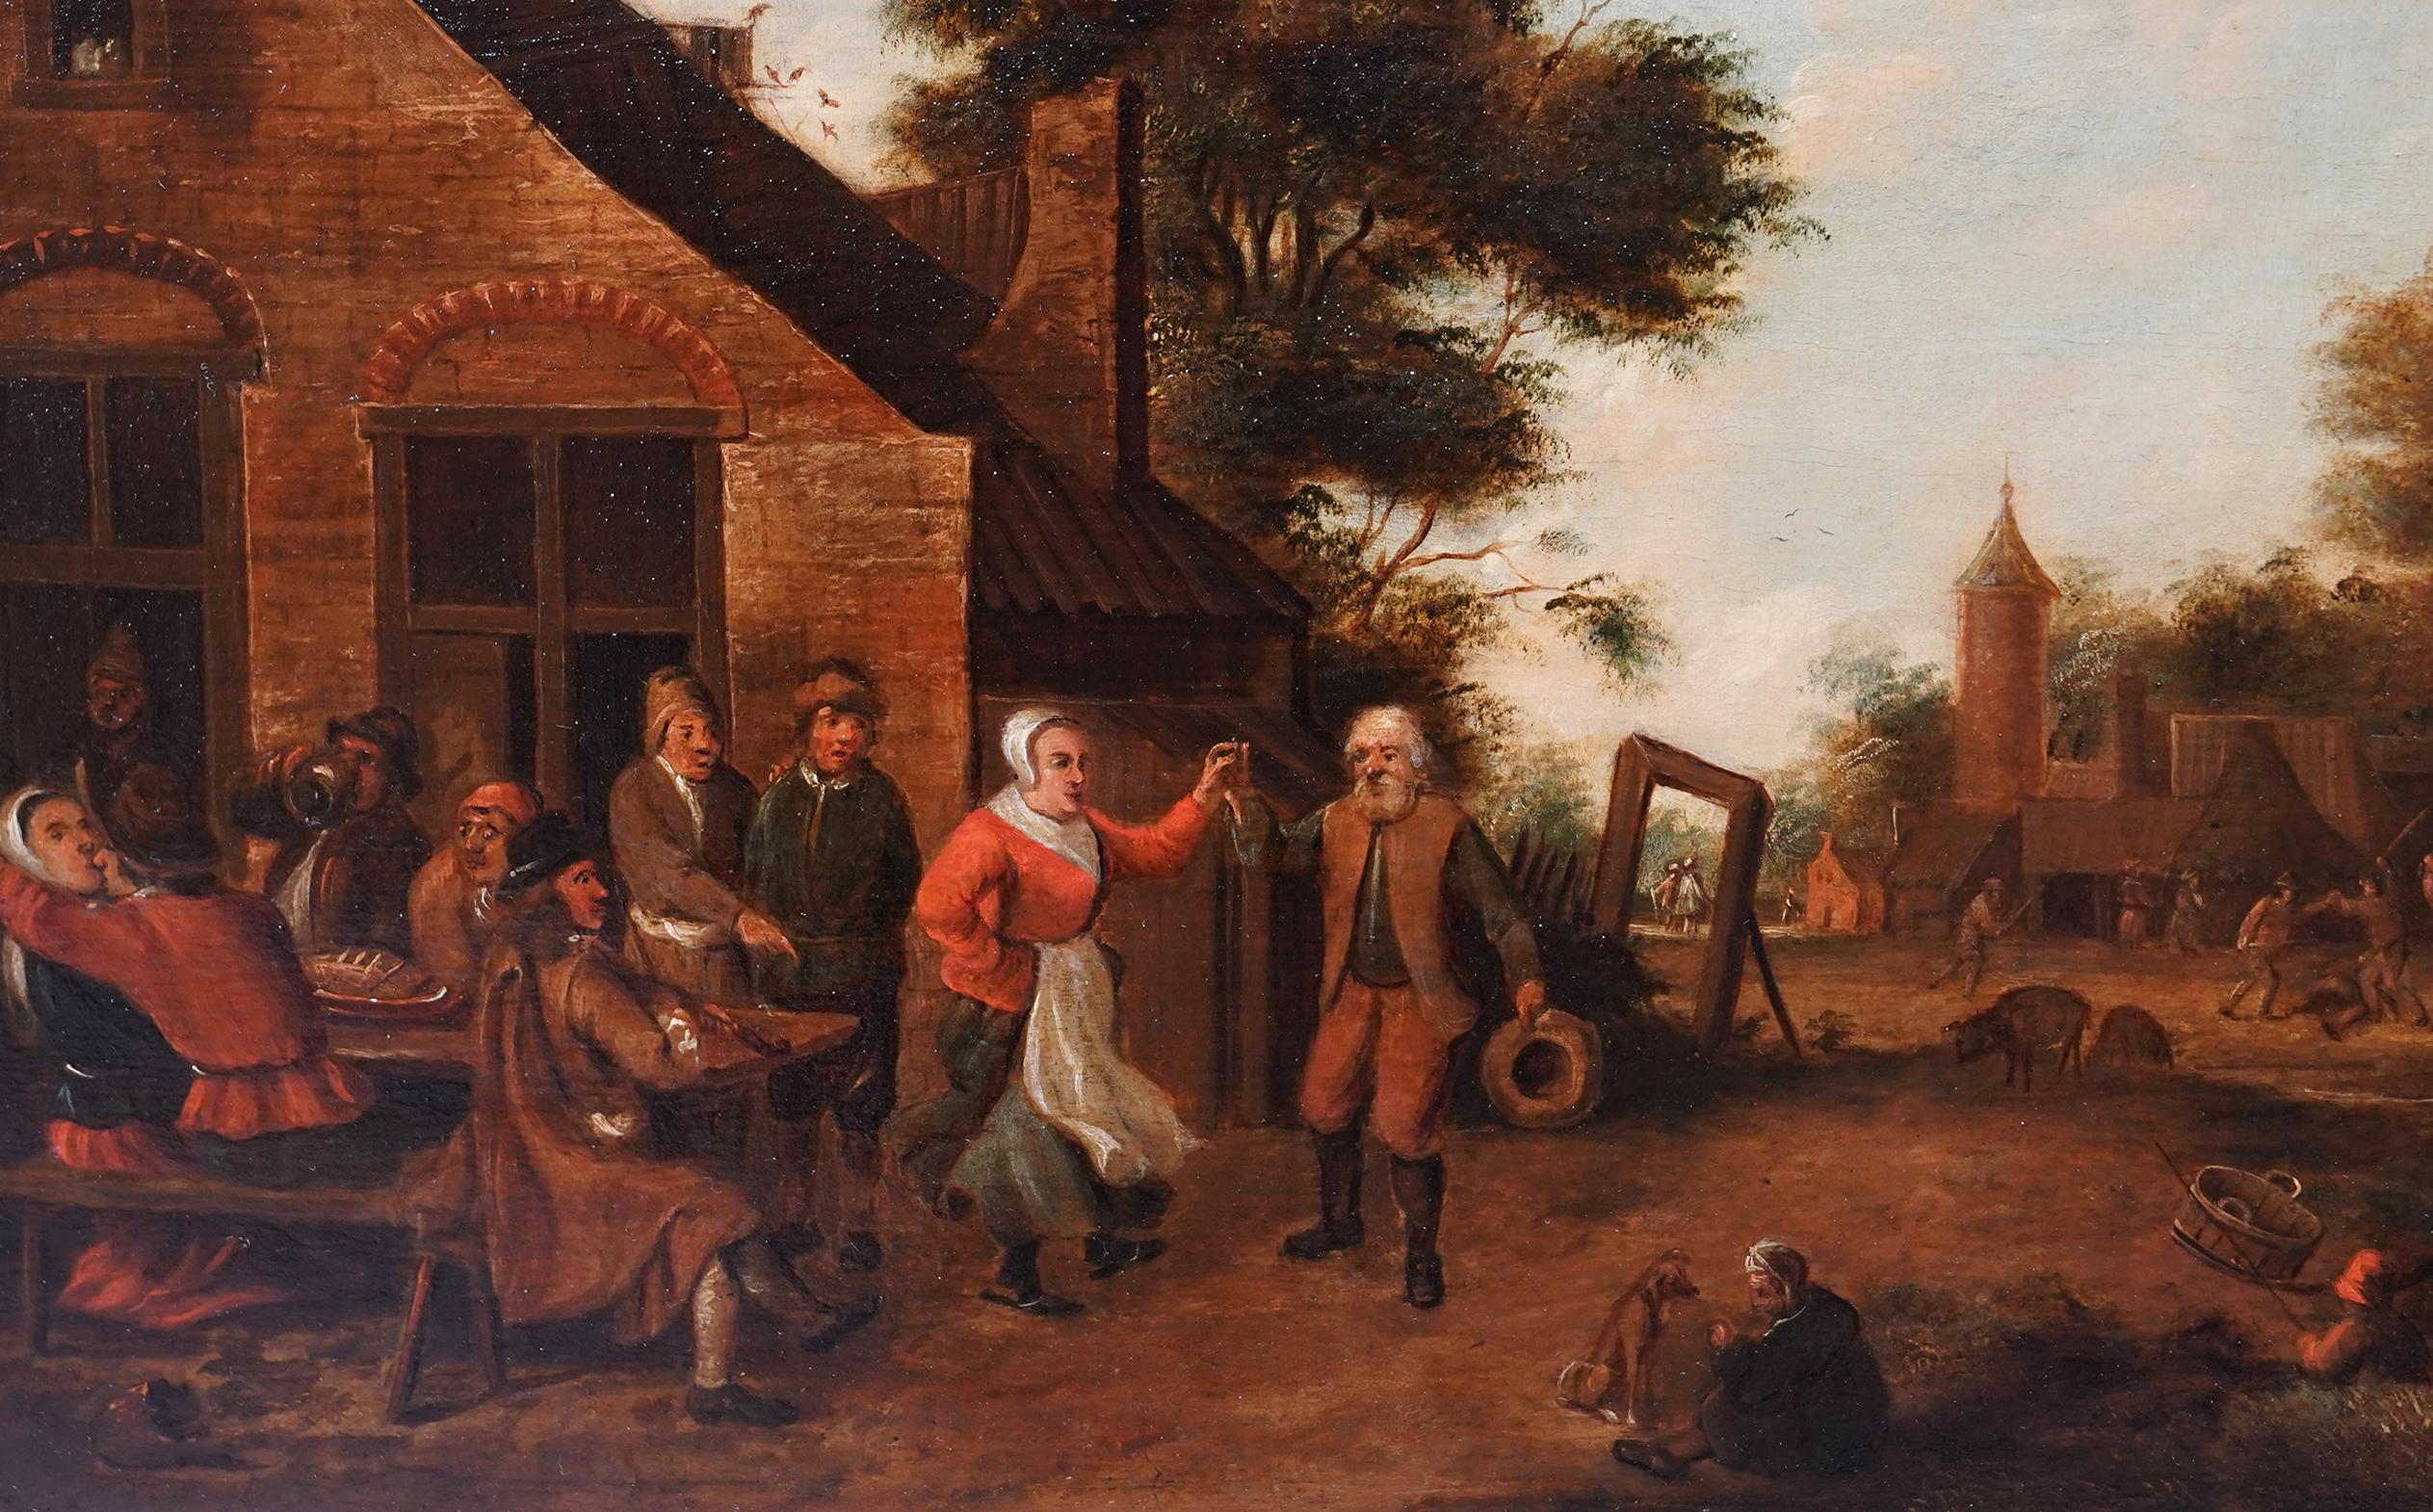 Dorfbewohner in einer Landschaft - Flämische Kunst des 17. Jahrhunderts figurative Landschaft Ölgemälde (Alte Meister), Painting, von Thomas van Apshoven